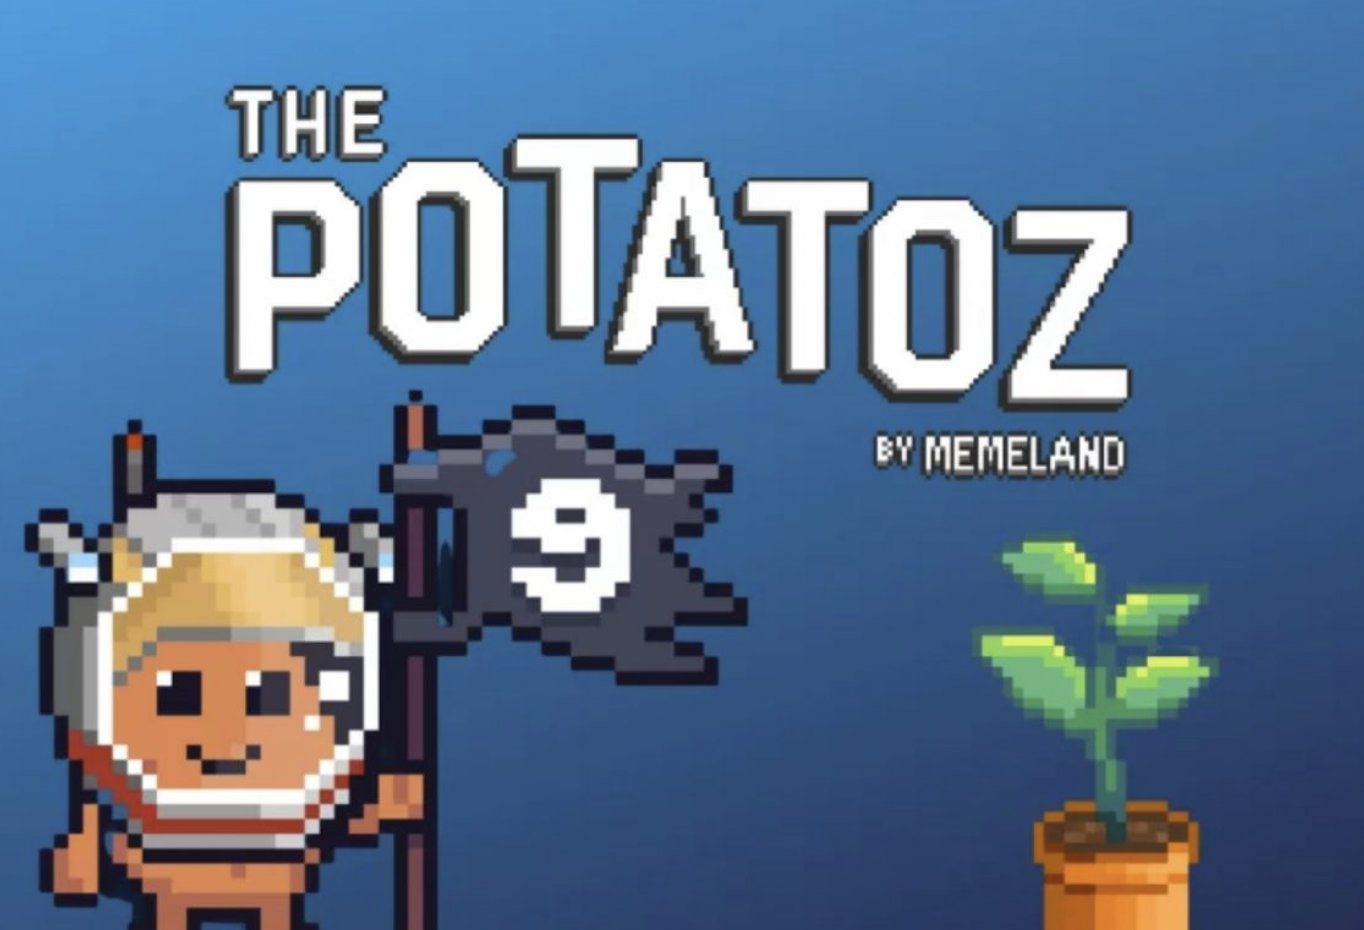 the potatoz